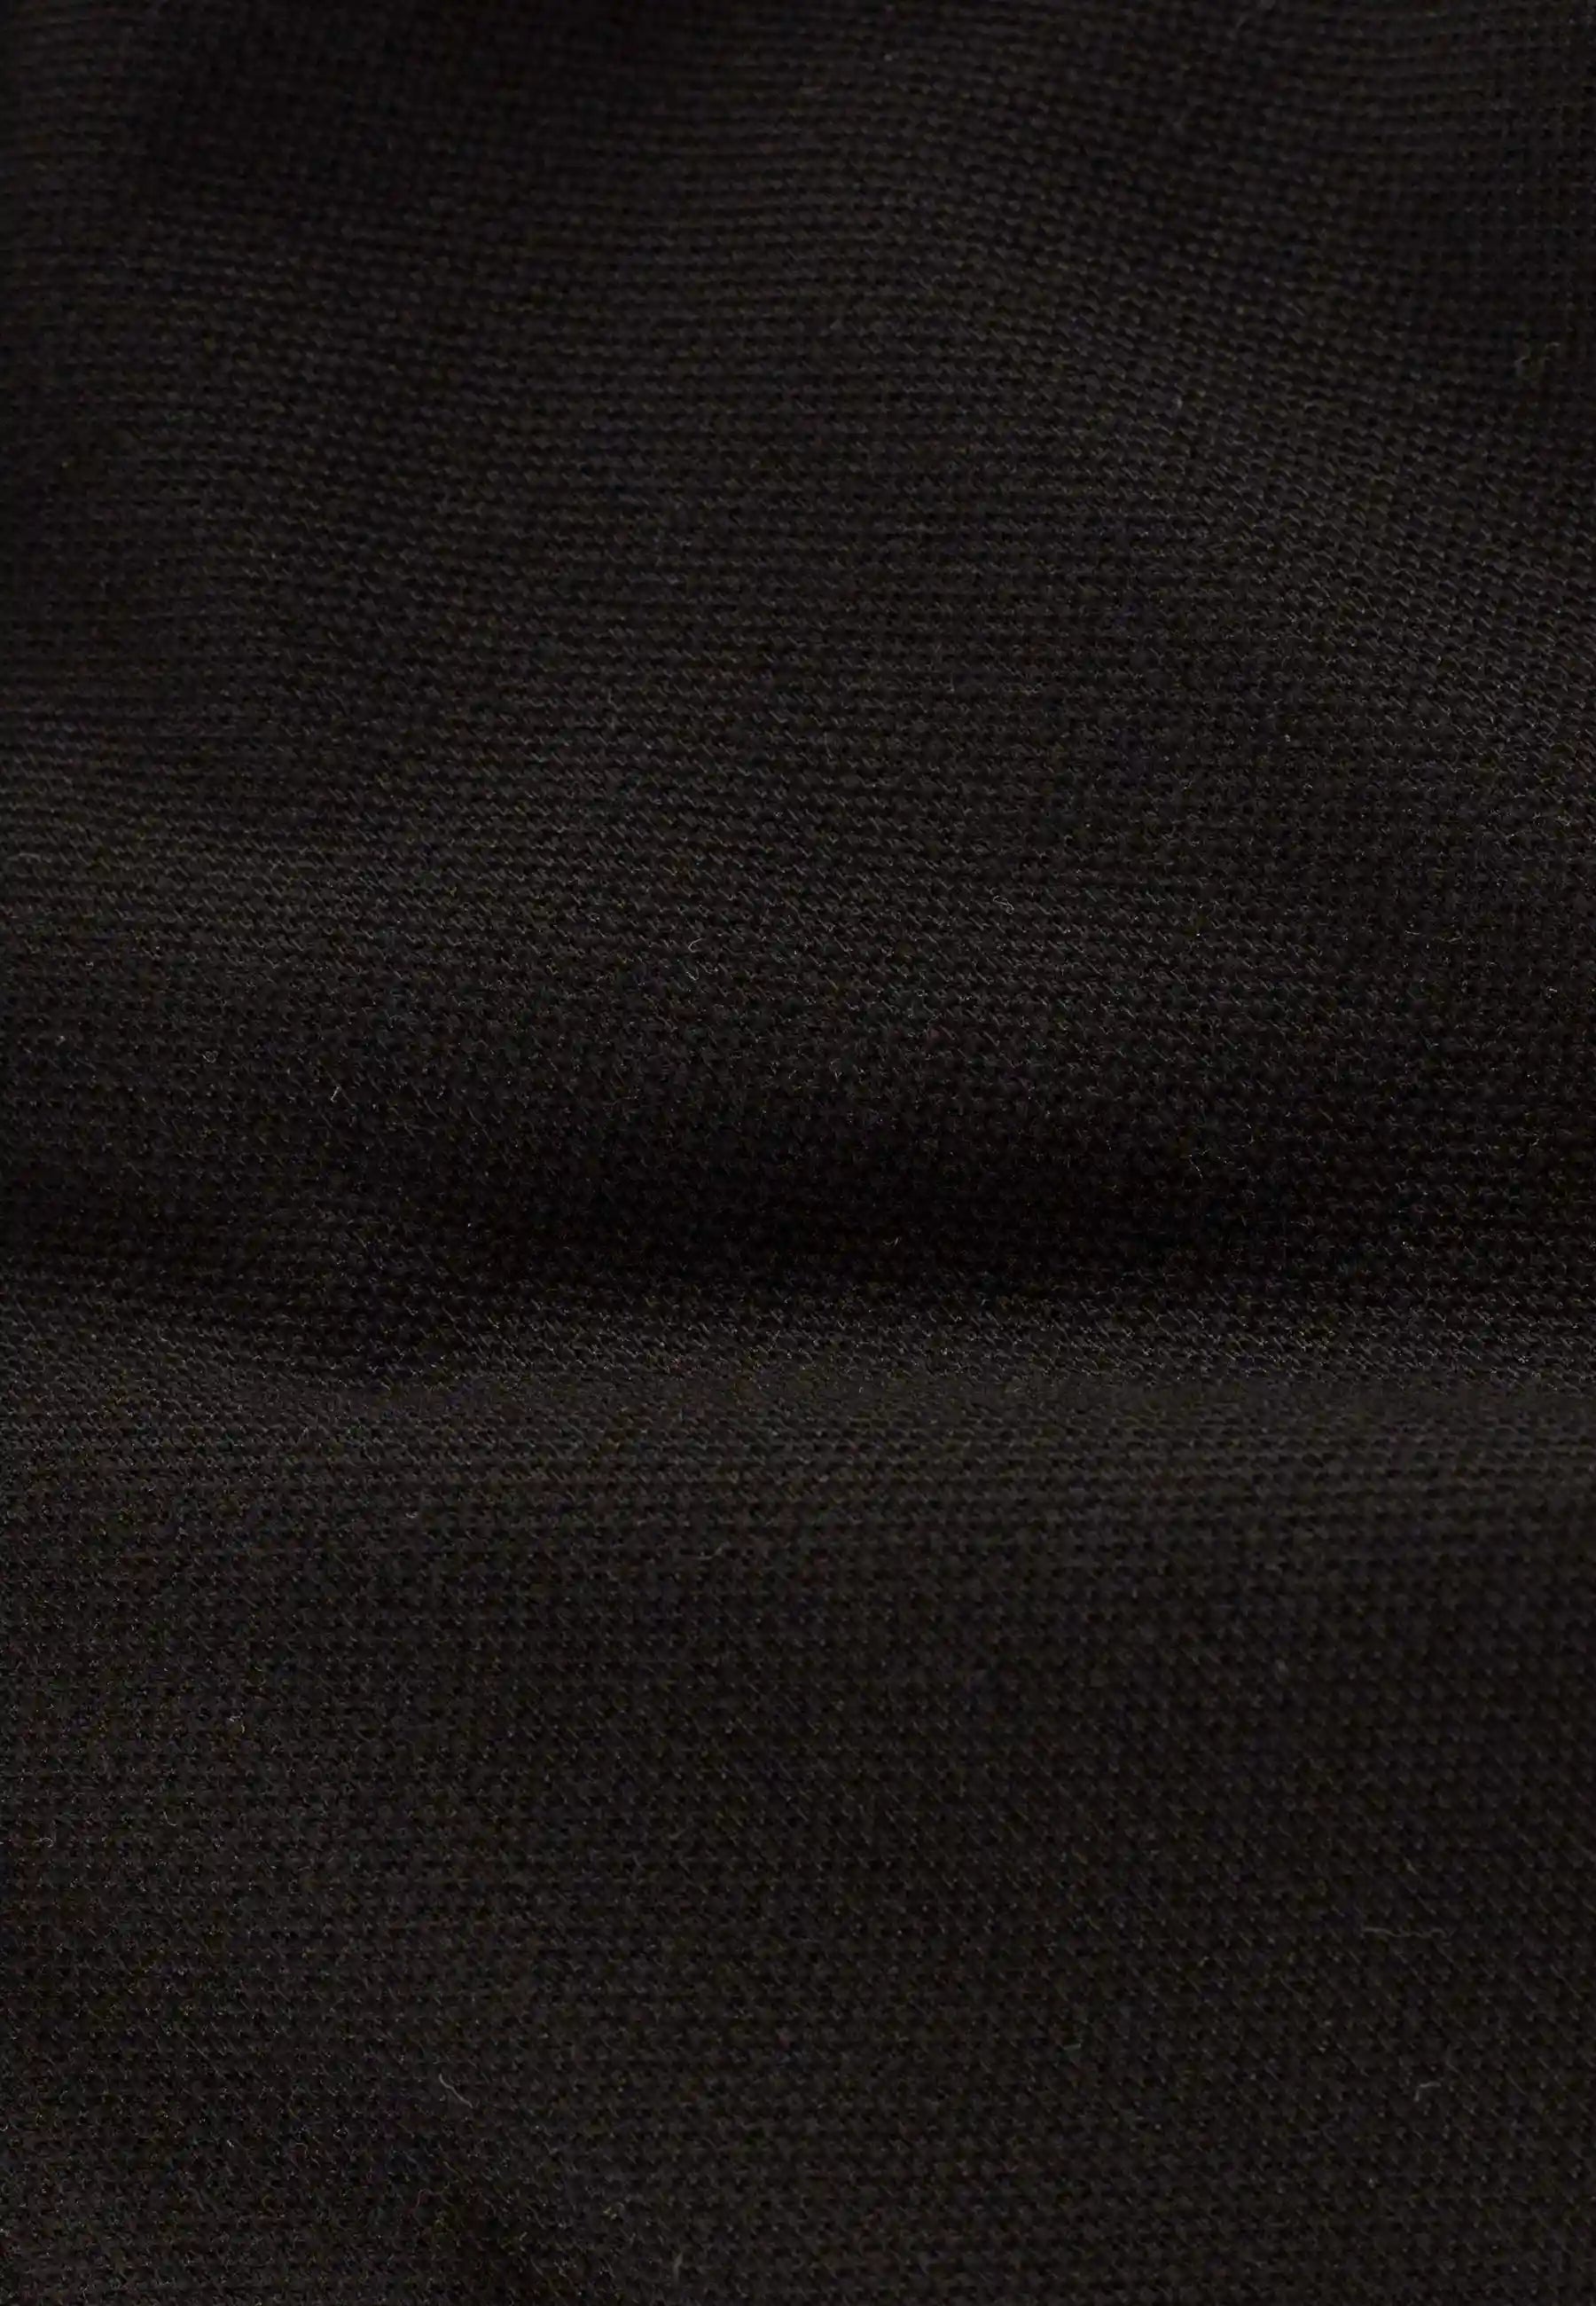 Nelson polo pique shirt - Black